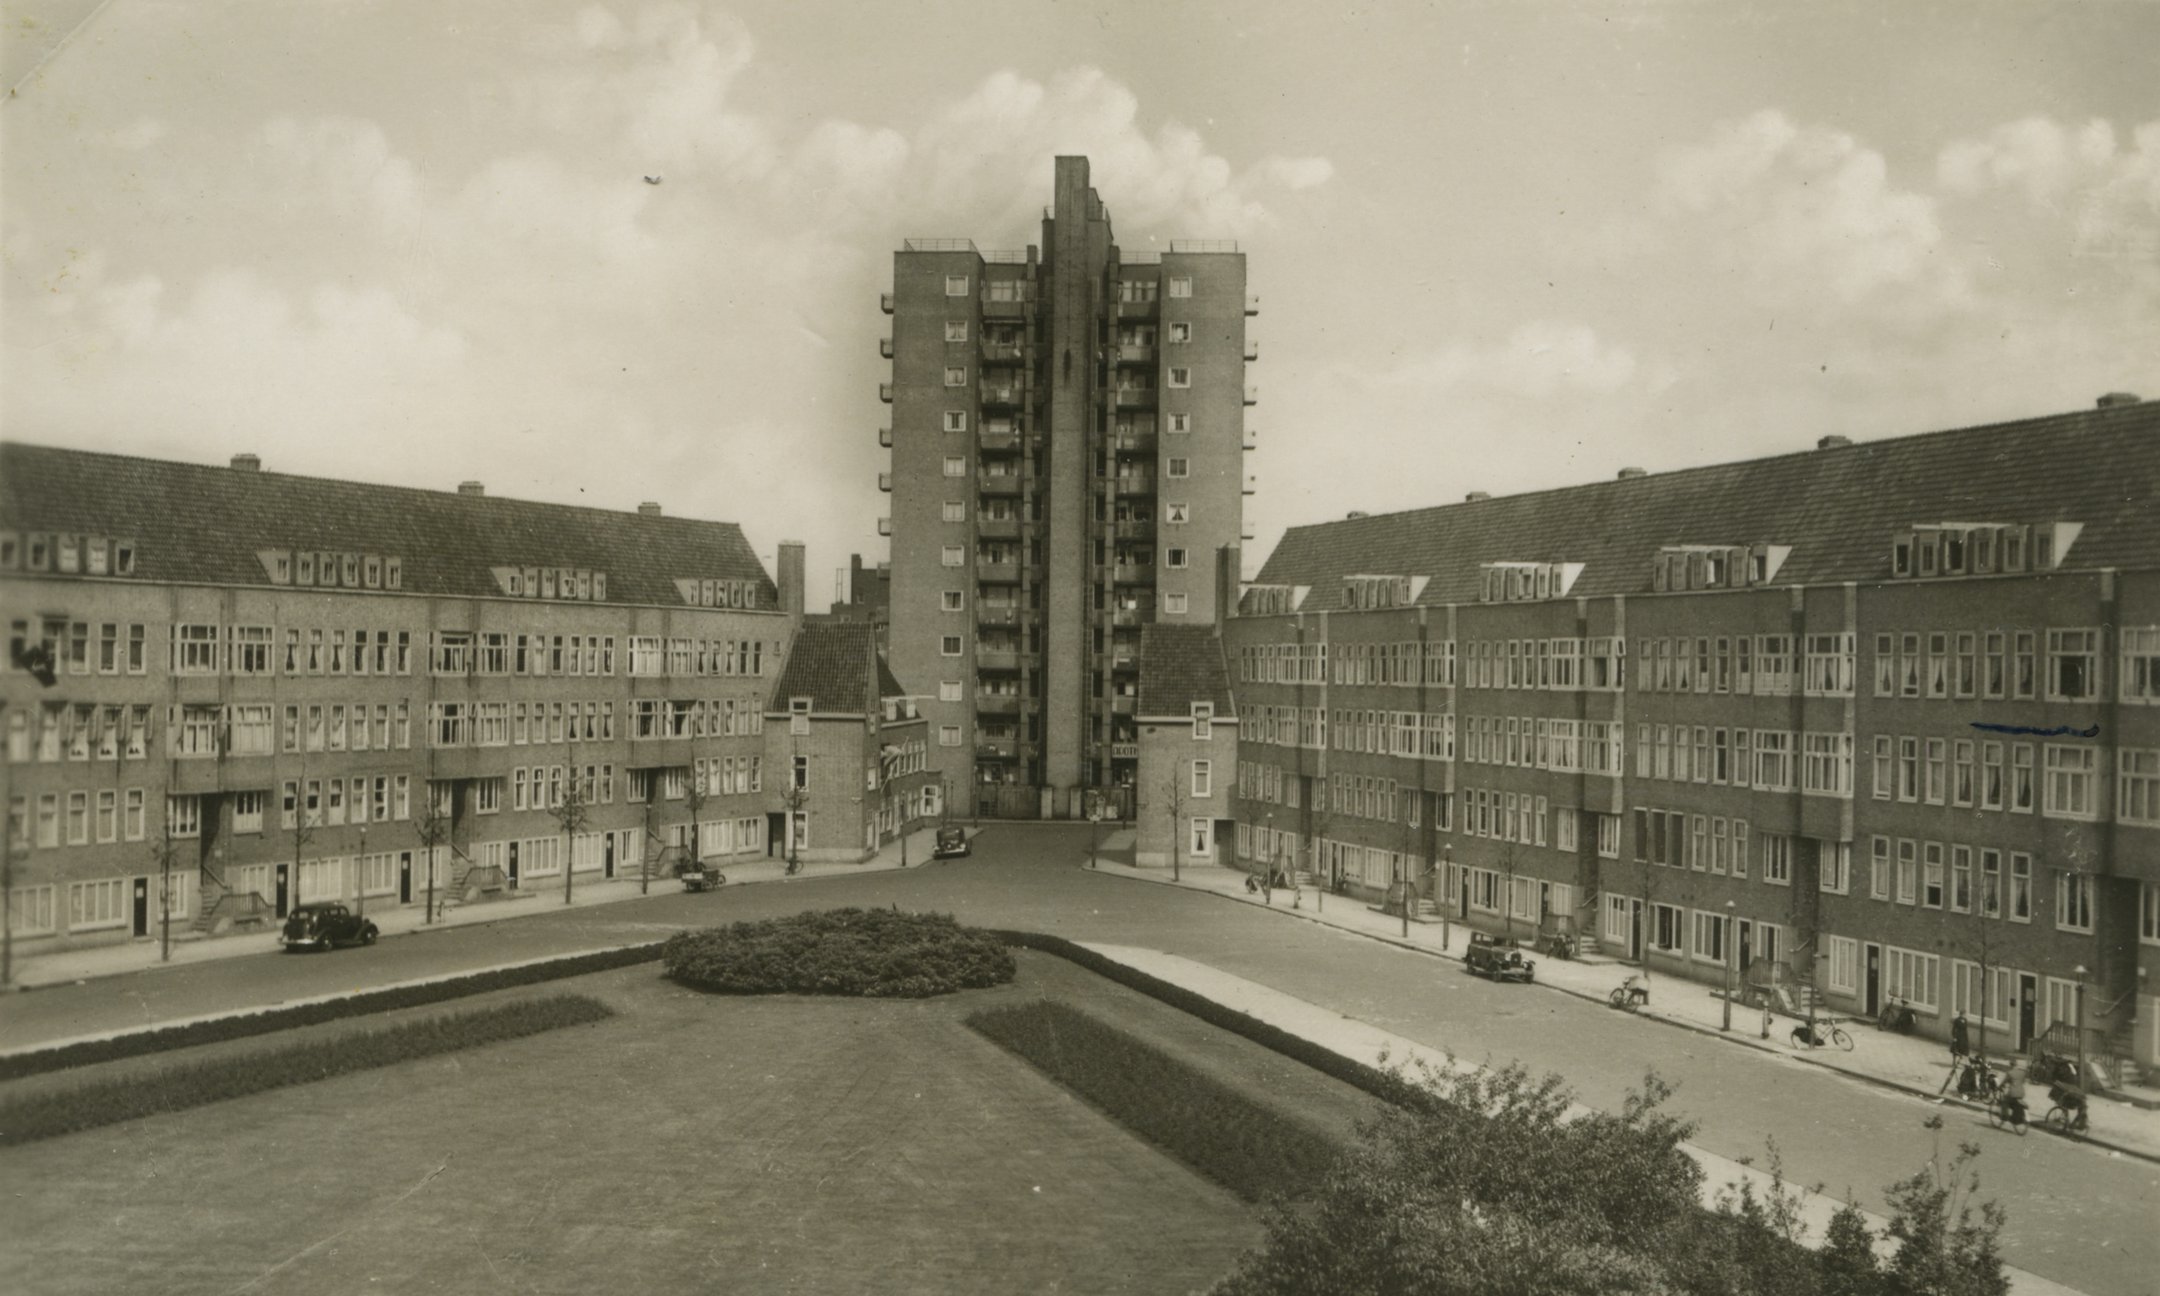 二十世纪三十年代梅尔韦德广场风貌的明信片。安妮在明信片上标明（右侧中间位置）弗兰克一家居住的地点。